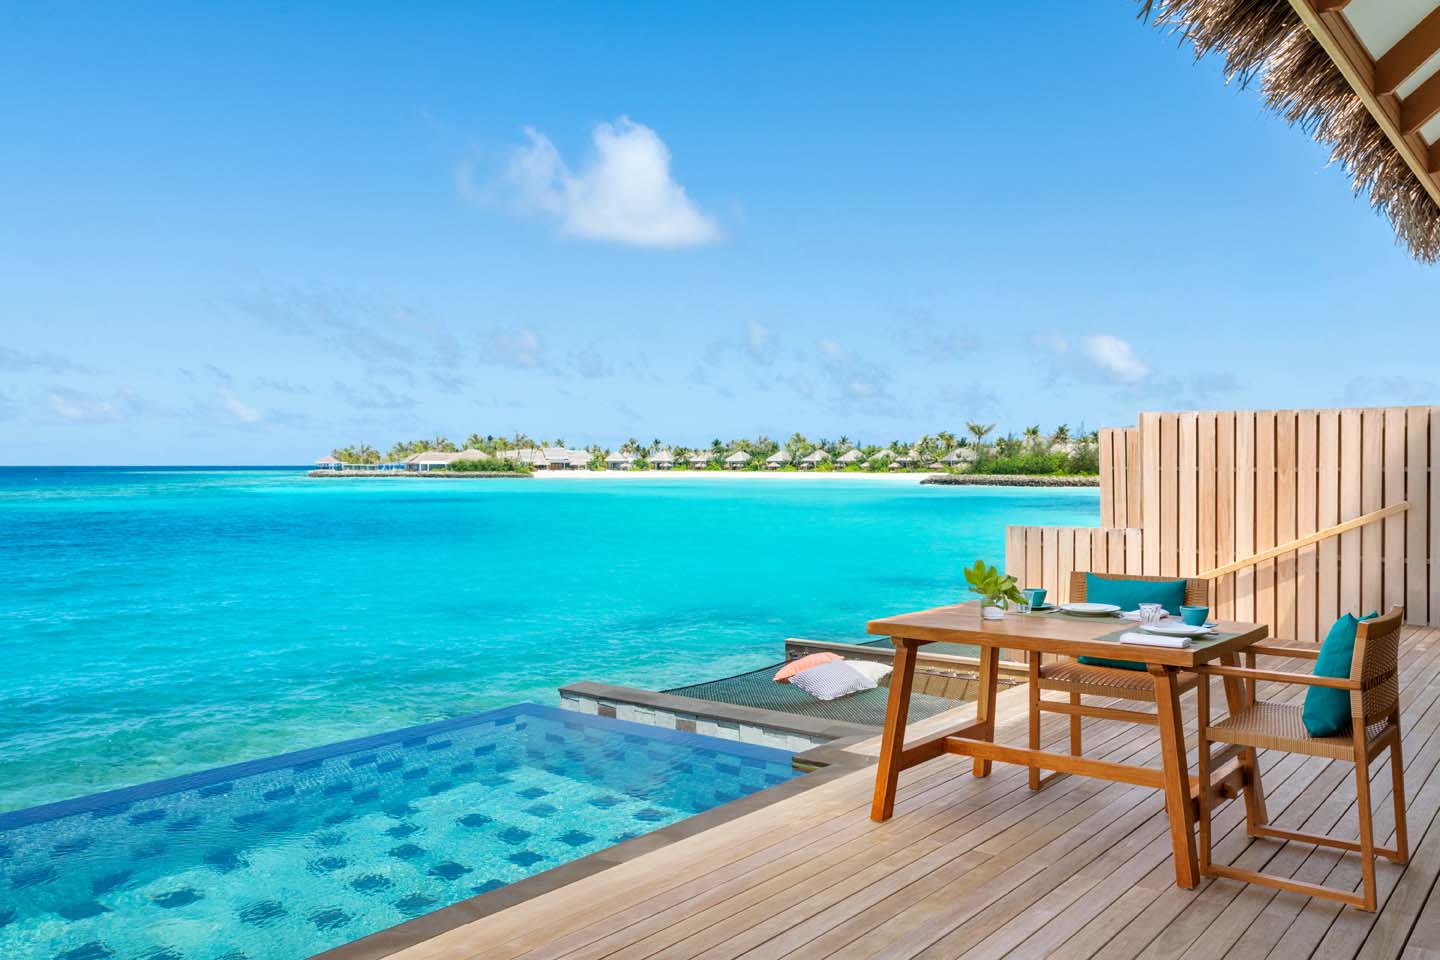 Maldivian Bliss Offer at Hilton Maldives Amingiri Resort & spa ...